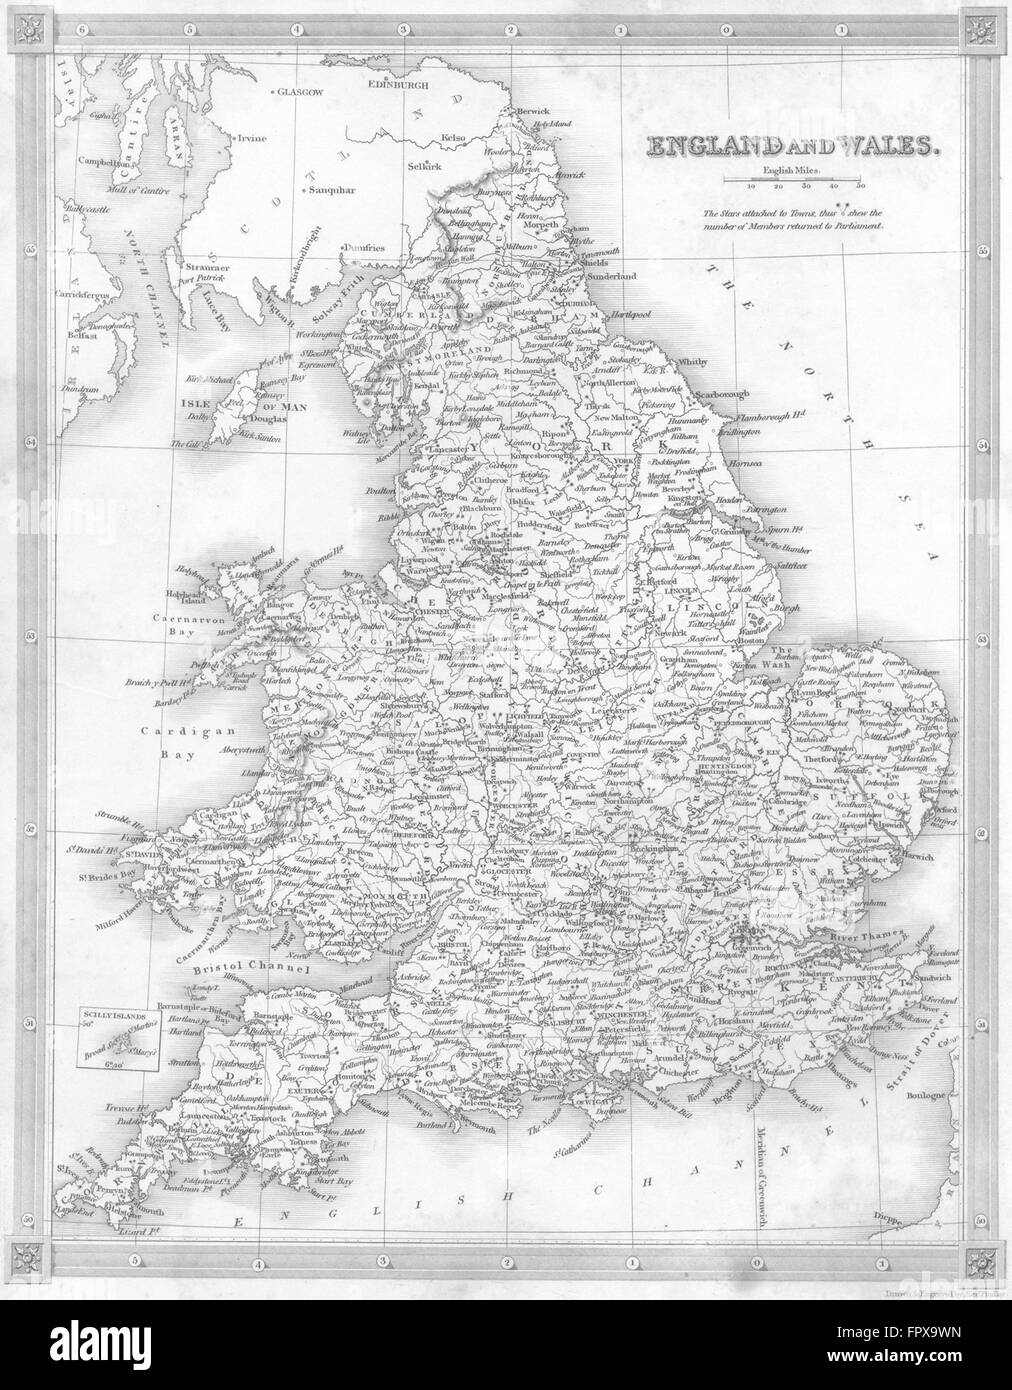 Royaume-uni : Angleterre Pays de Galles : Kelly, 1841 carte antique Banque D'Images